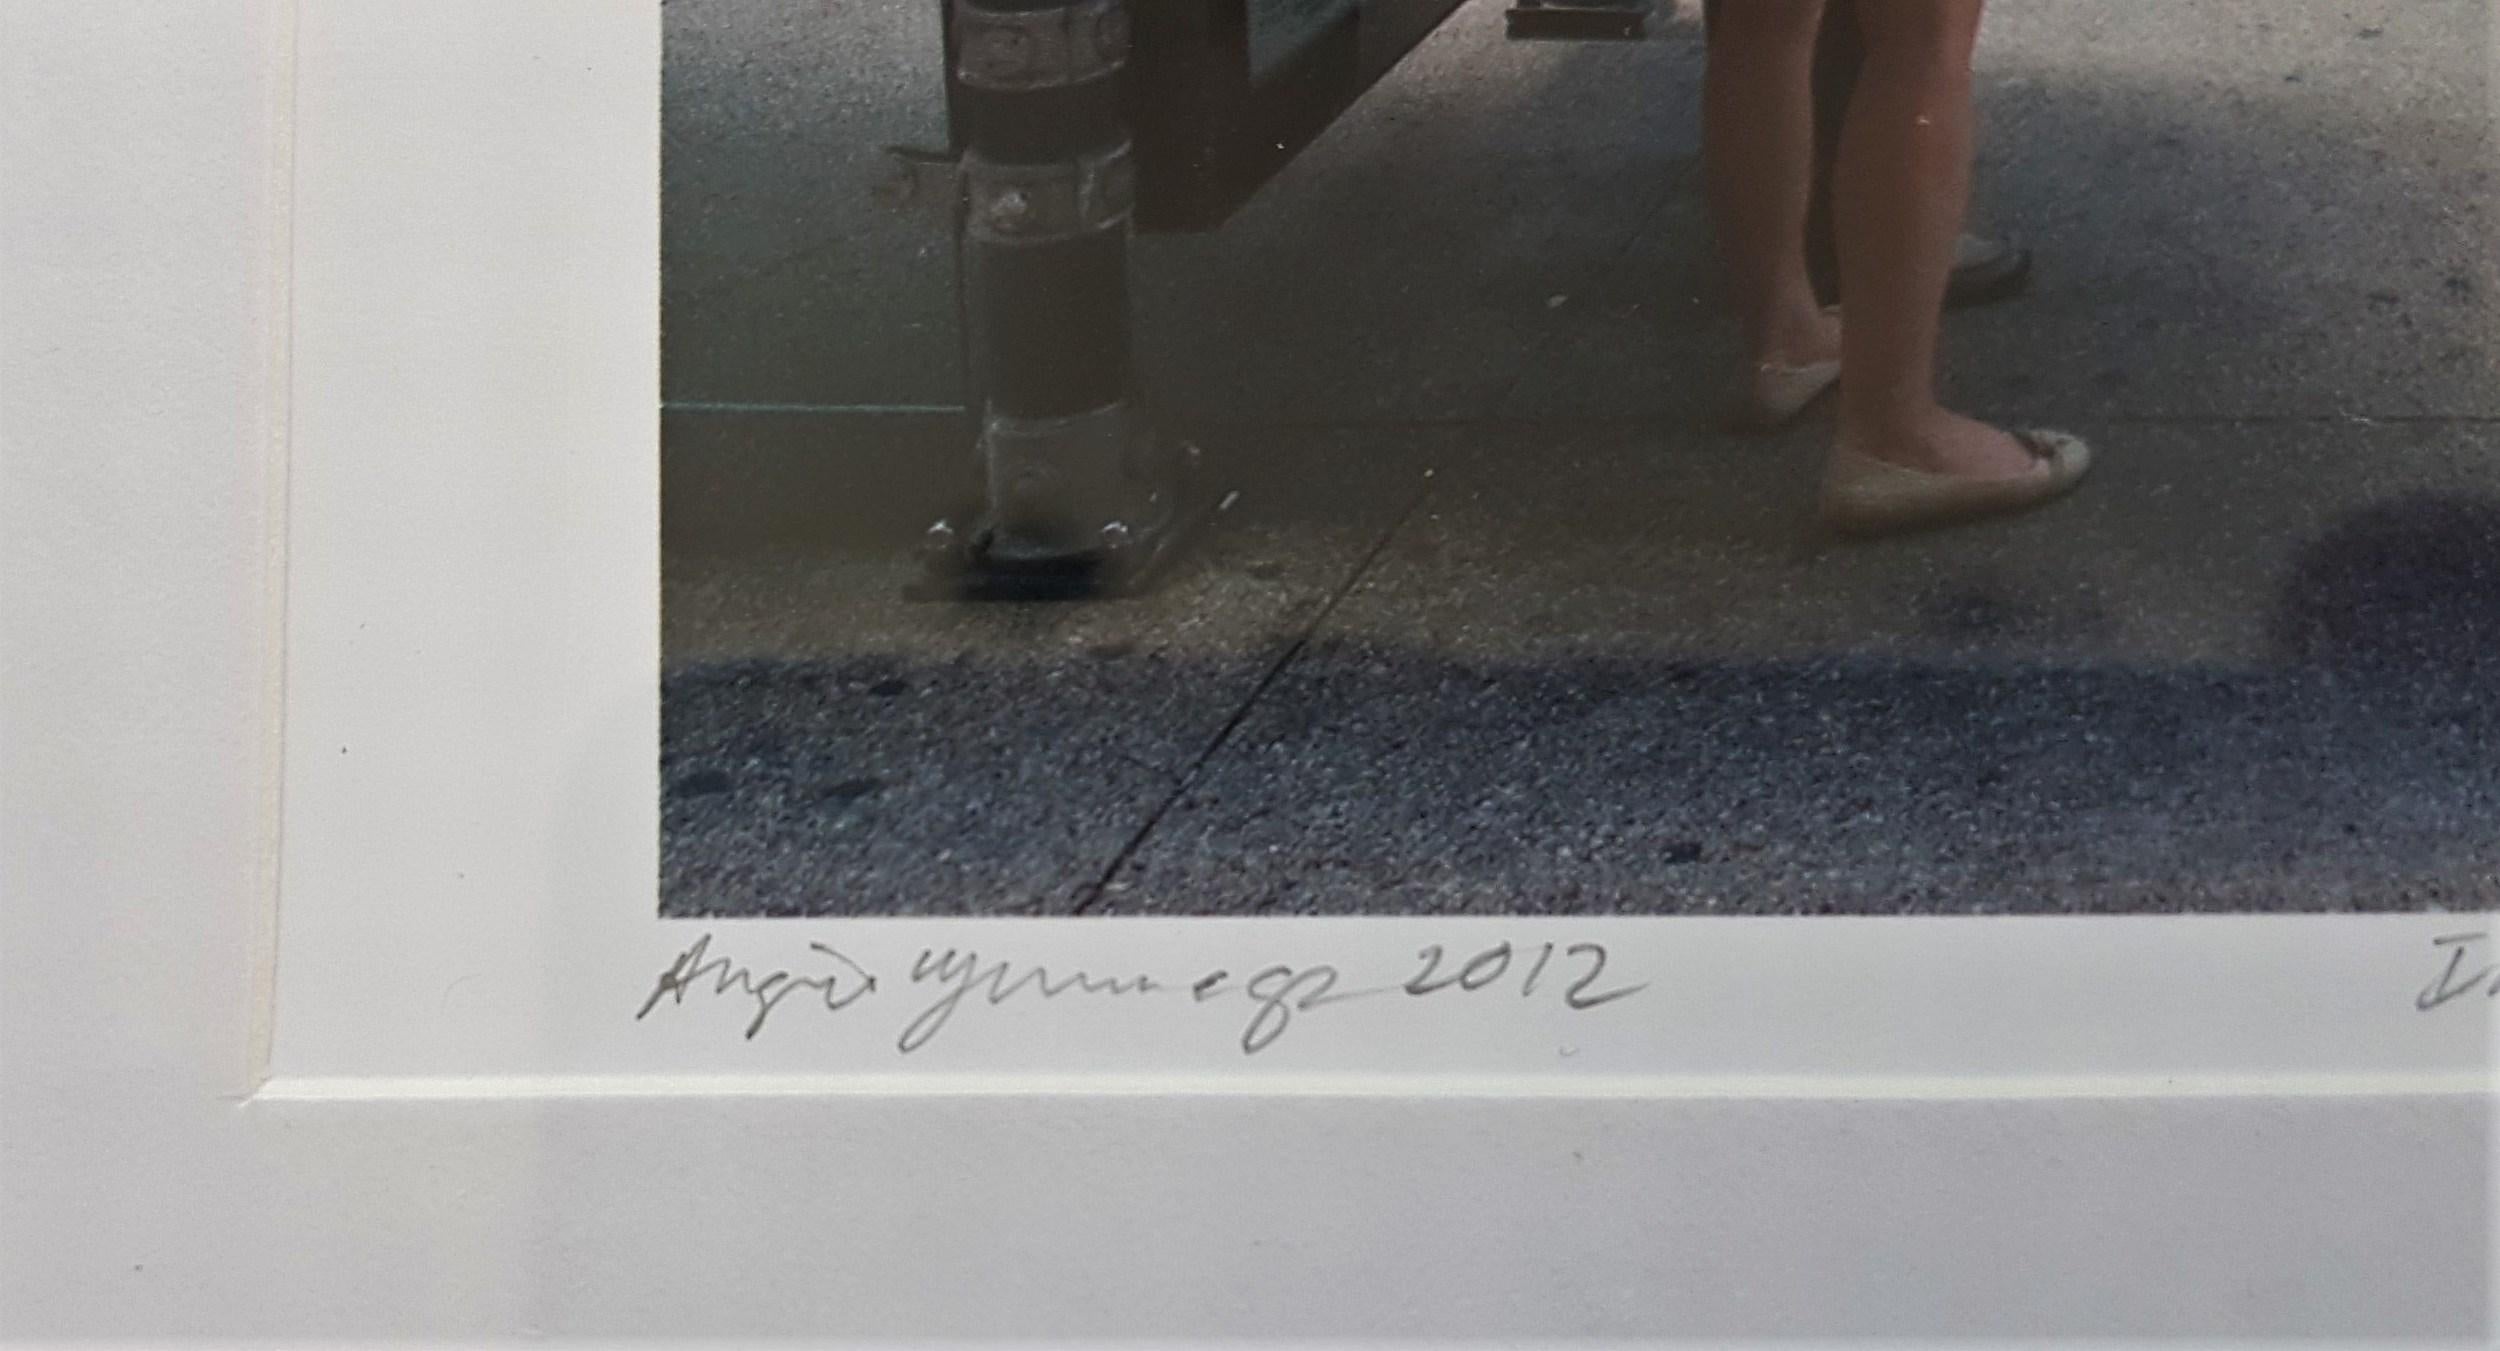 Angie Jennings
Innuendo
Material: Archivalischer Pigmentdruck
Datum: 2012
Abmessungen: 4 x 6 Zoll.
Von Hand signiert und nummeriert
Auflage: 15
COA bereitgestellt

Angie ist seit über 30 Jahren als Fotografin tätig.  Ihre Bilder können Geschichten